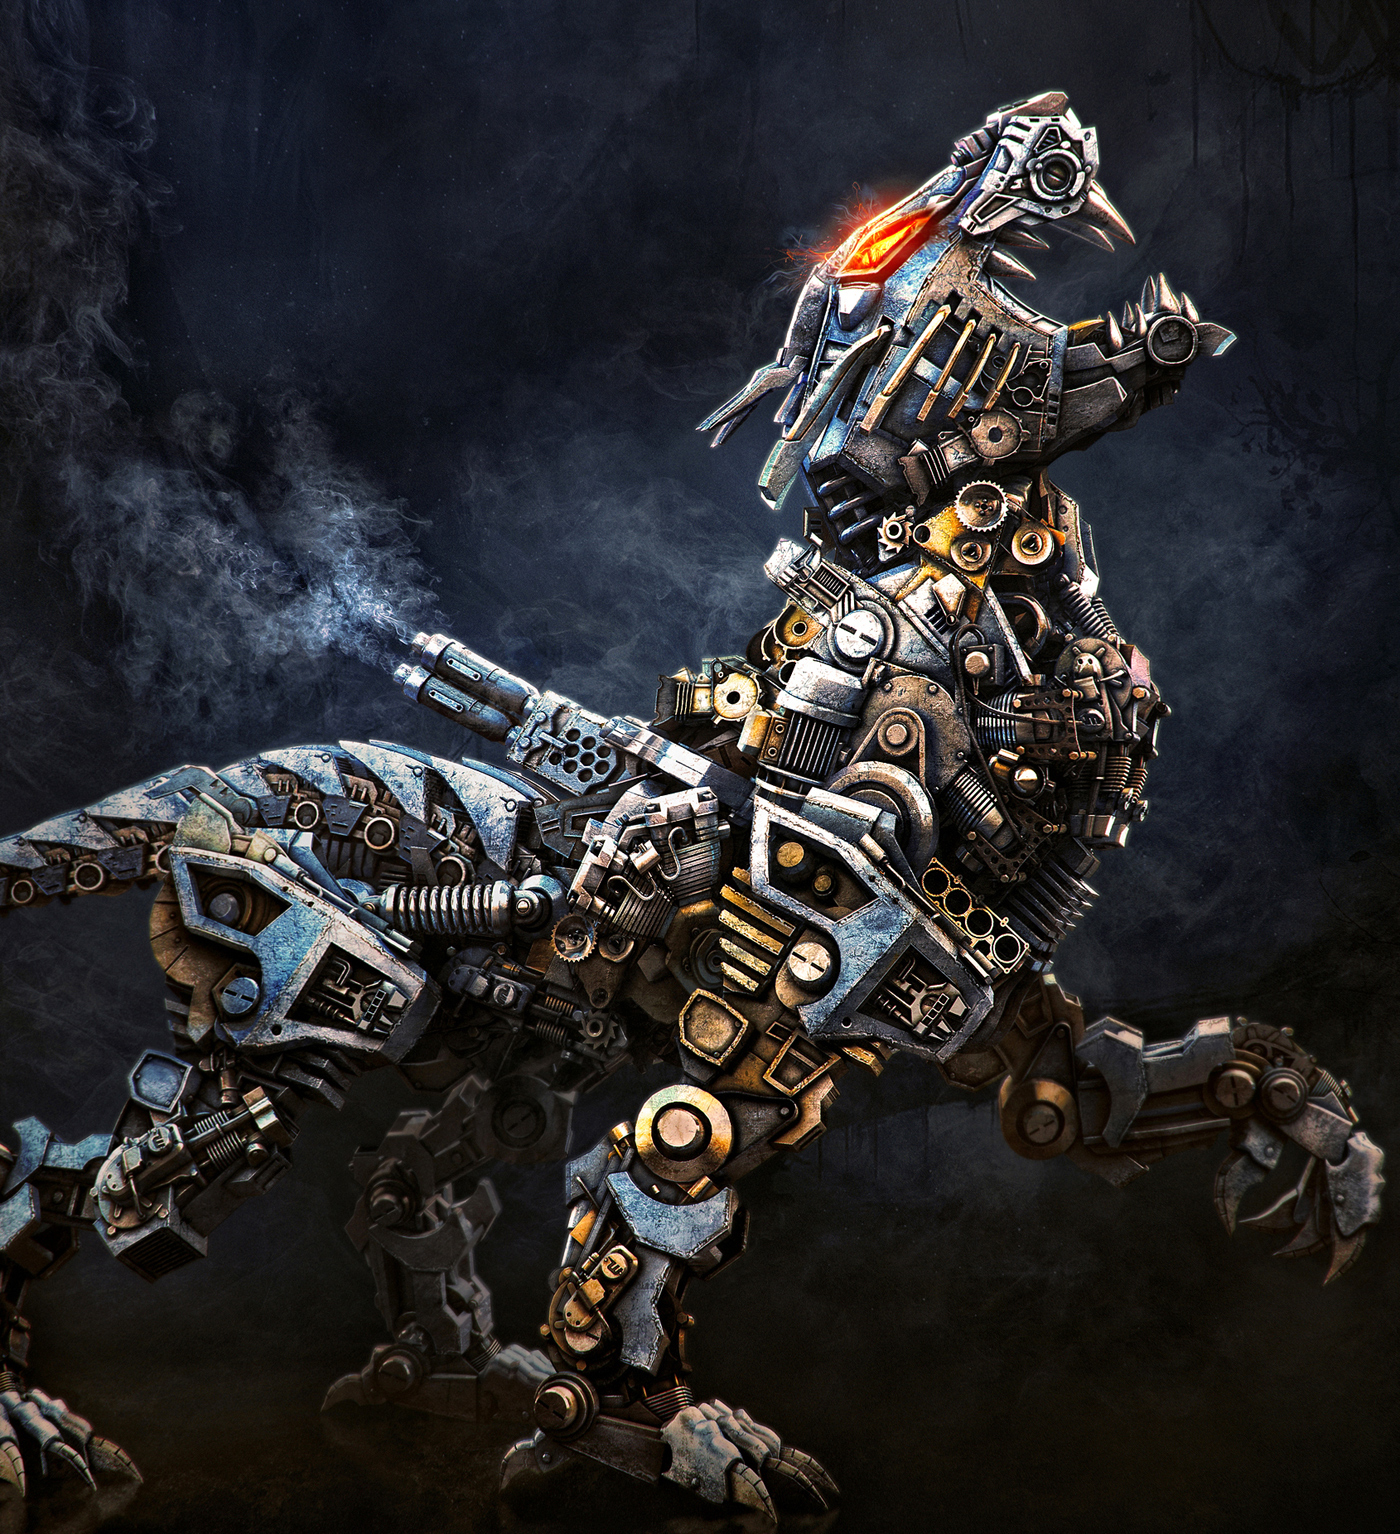 mech concept art beast Render visualization STEAMPUNK fantasy robot mecha Cyberpunk